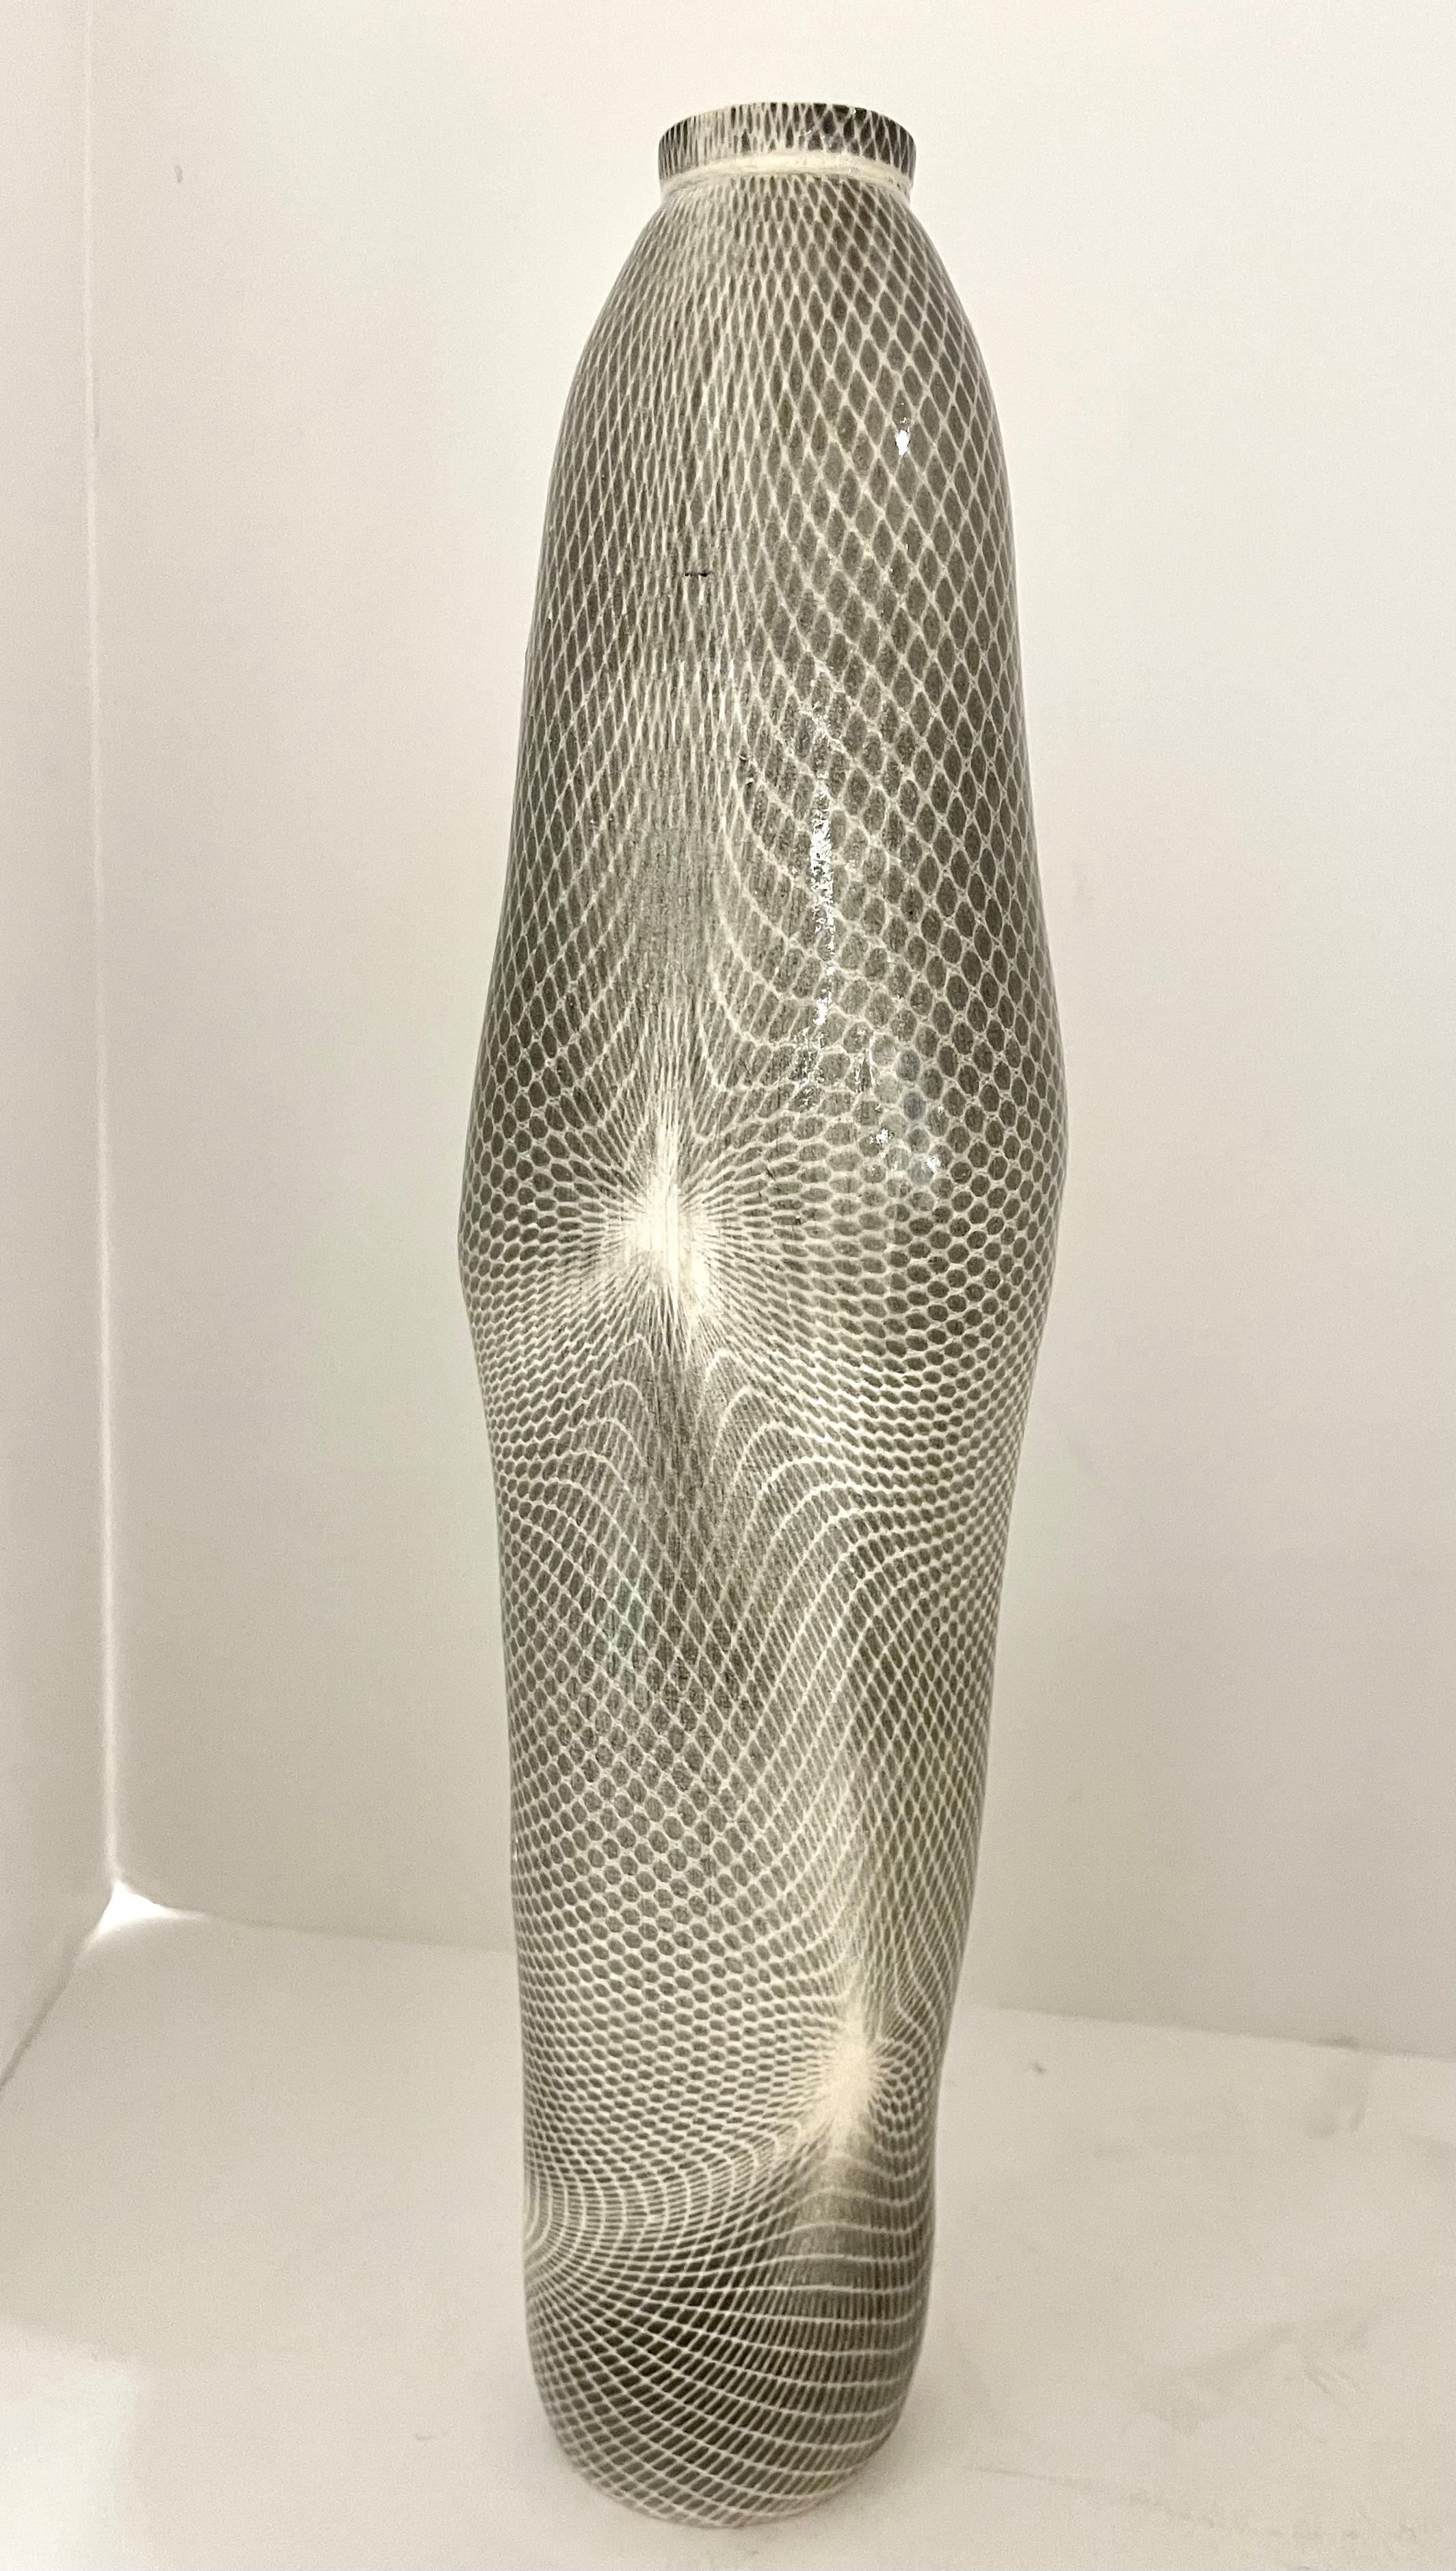 Une étonnante paire de récipients en grès de la célèbre artiste Lauren Gelgor Kaplan. Revendu par Takashimaya à New York. Magnifique, le plus grand mesure 13 1/4 pouces de haut et 3 1/2 pouces de diamètre. Le plus petit, plus large, mesure 6 1/2